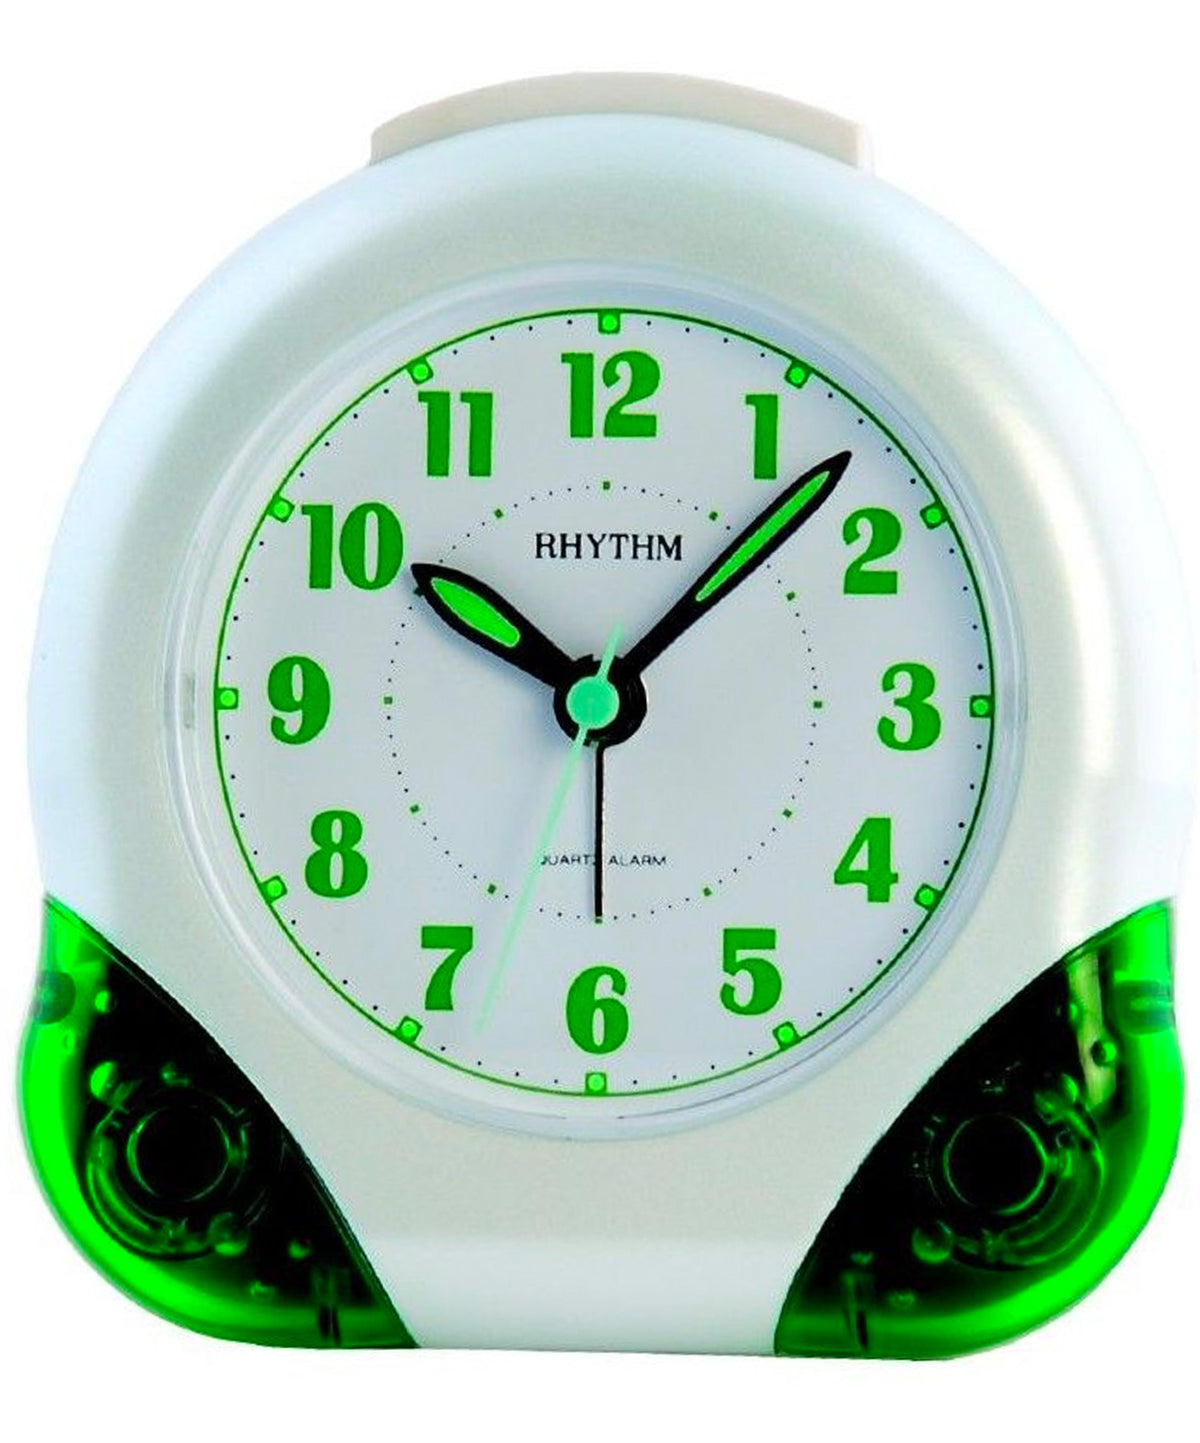 Rhythm, Beep Alarm Clock, 4SE476WR05